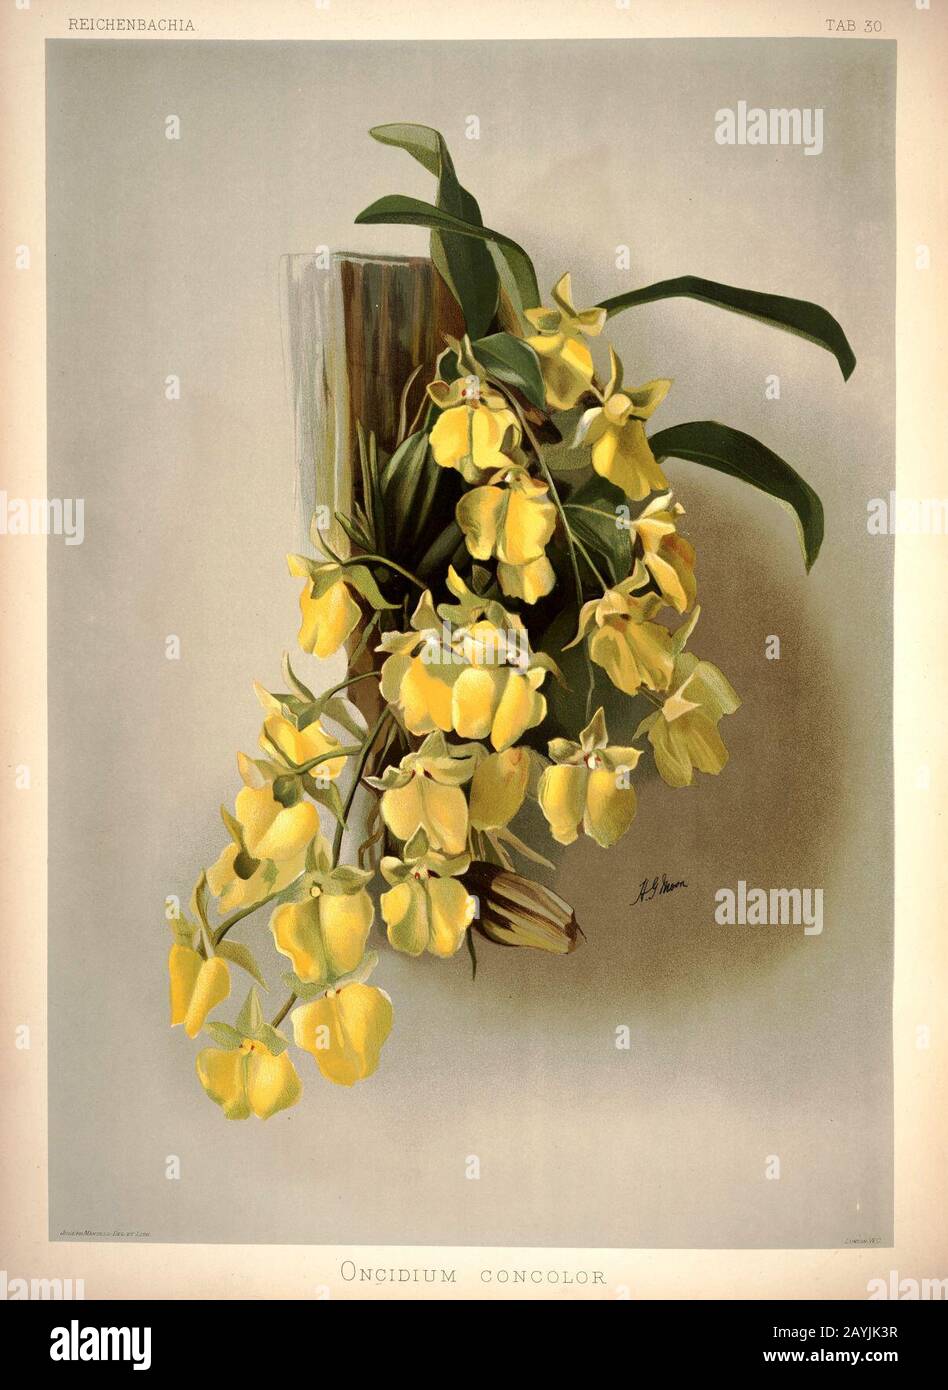 Frederick Sander - Reichenbachia I plate 30 (1888) - Oncidium concolor. Stock Photo